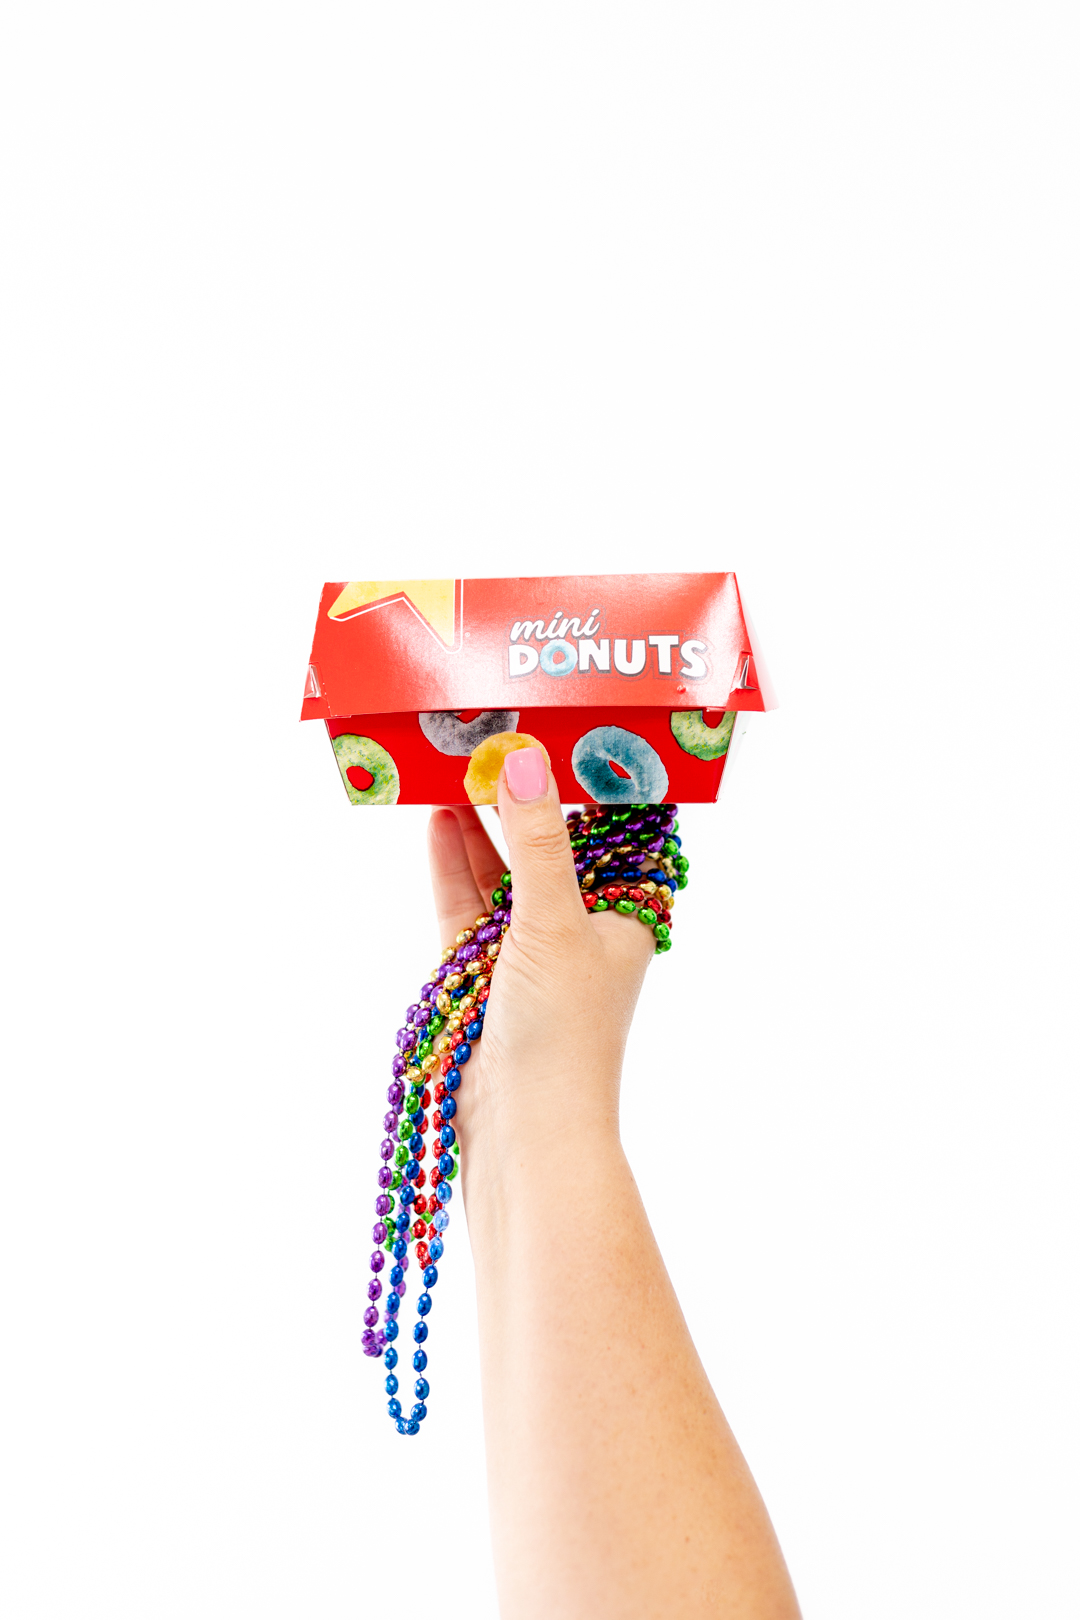 Kellogg's Mini Donuts